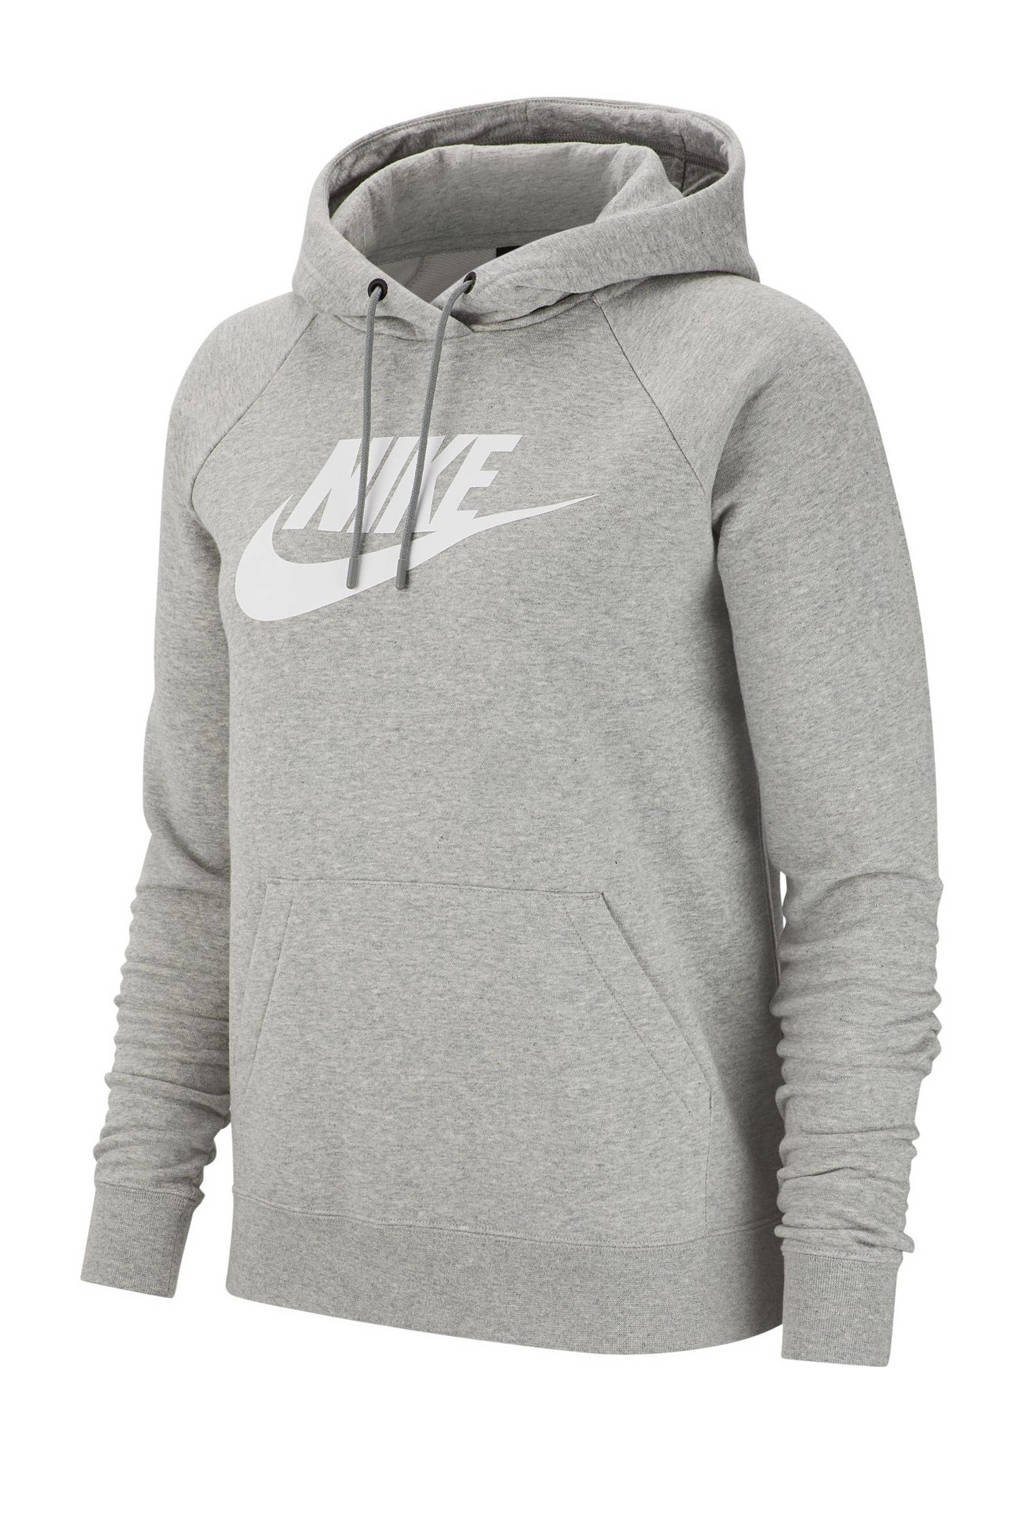 Grijs melange dames Nike hoodie melange van katoen met logo dessin, lange mouwen en capuchon